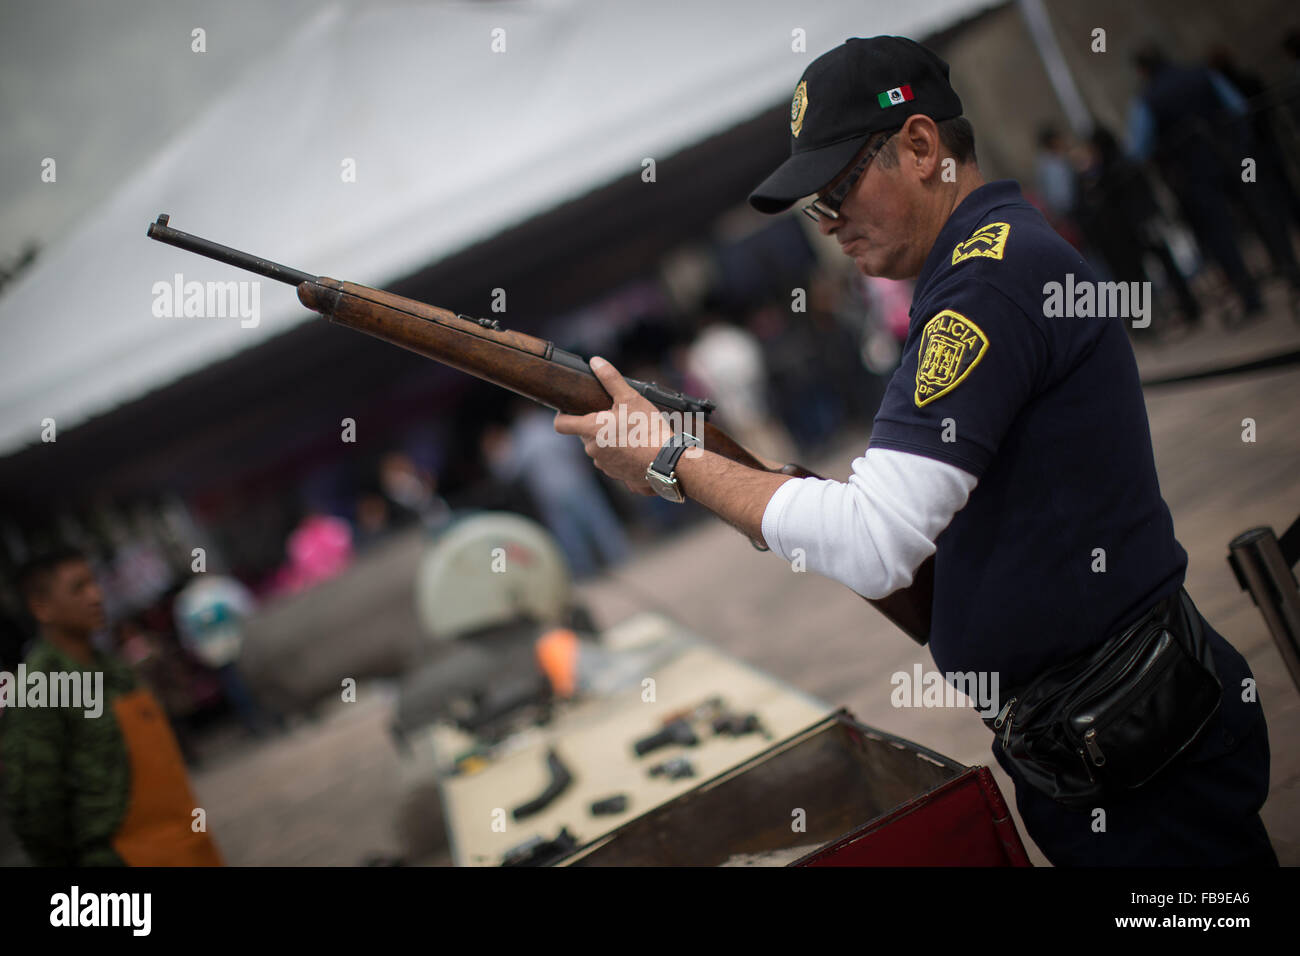 (160112) -- CITTÀ DEL MESSICO, Gennaio 12, 2016 (Xinhua) -- un poliziotto controlla un arma durante la sesta tappa del programma " Per la vostra famiglia, disarmo volontario', alla Cattedrale Metropolitana, a Città del Messico, capitale del Messico, a gennaio 12, 2016. Secondo la stampa locale il governo del Distretto Federale (GDF, per il suo acronimo in spagnolo), effettuata la sesta fase di scambio di armi attraverso il programma "Per la vostra famiglia, disarmo volontario', in cui le persone possono scambiare armi e pistole giocattolo per denaro, disposizioni e dispositivi elettronici. Le armi scambiati sono oggetto di revisione da parte dei membri del Foto Stock